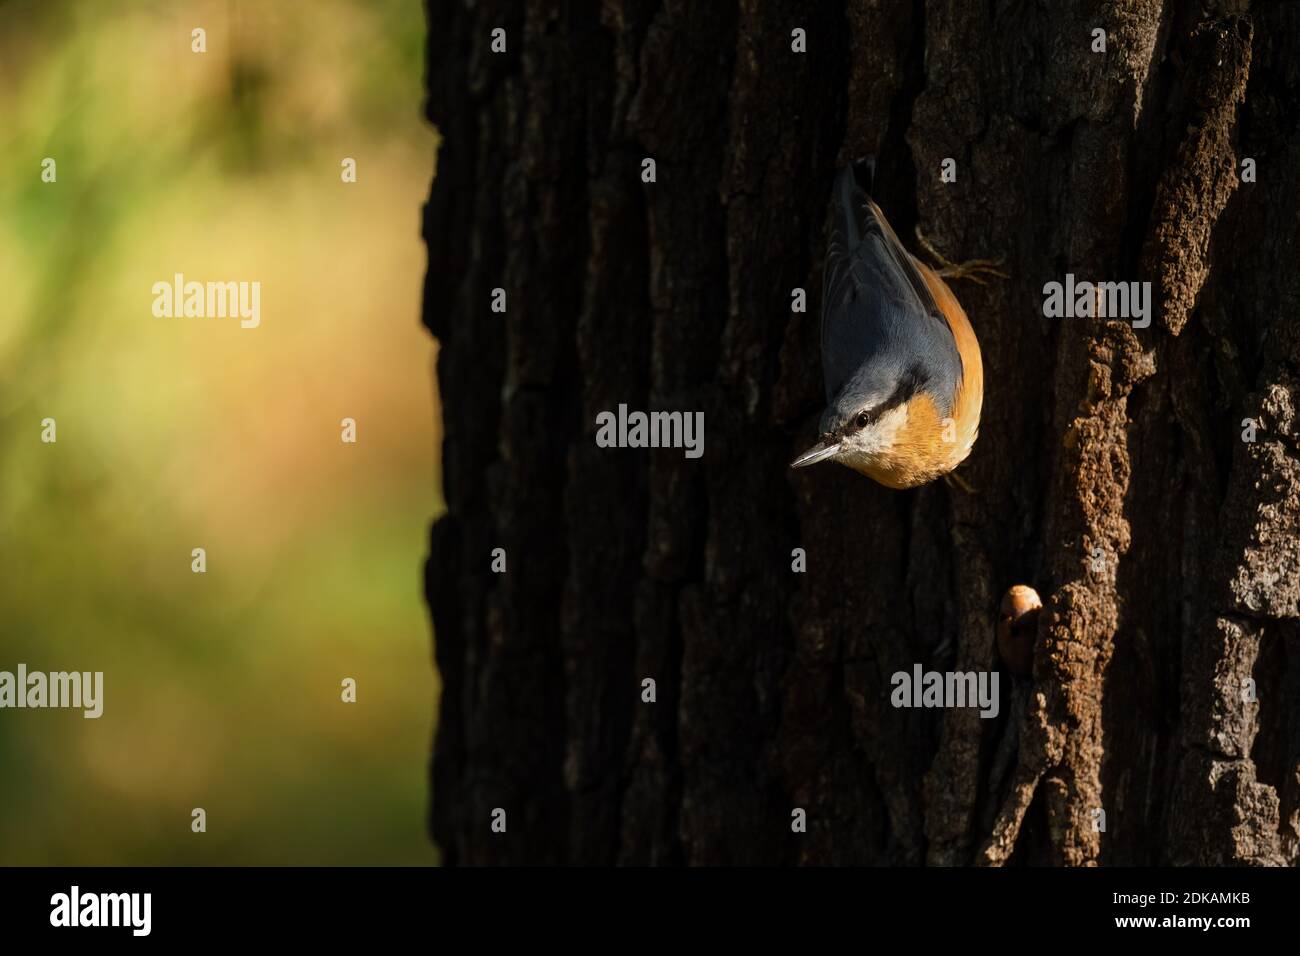 Legno Nuthatch - Sitta europaea, piccolo bel uccello perching provenienti da foreste europee e boschi, Hodonin, Repubblica Ceca. Foto Stock